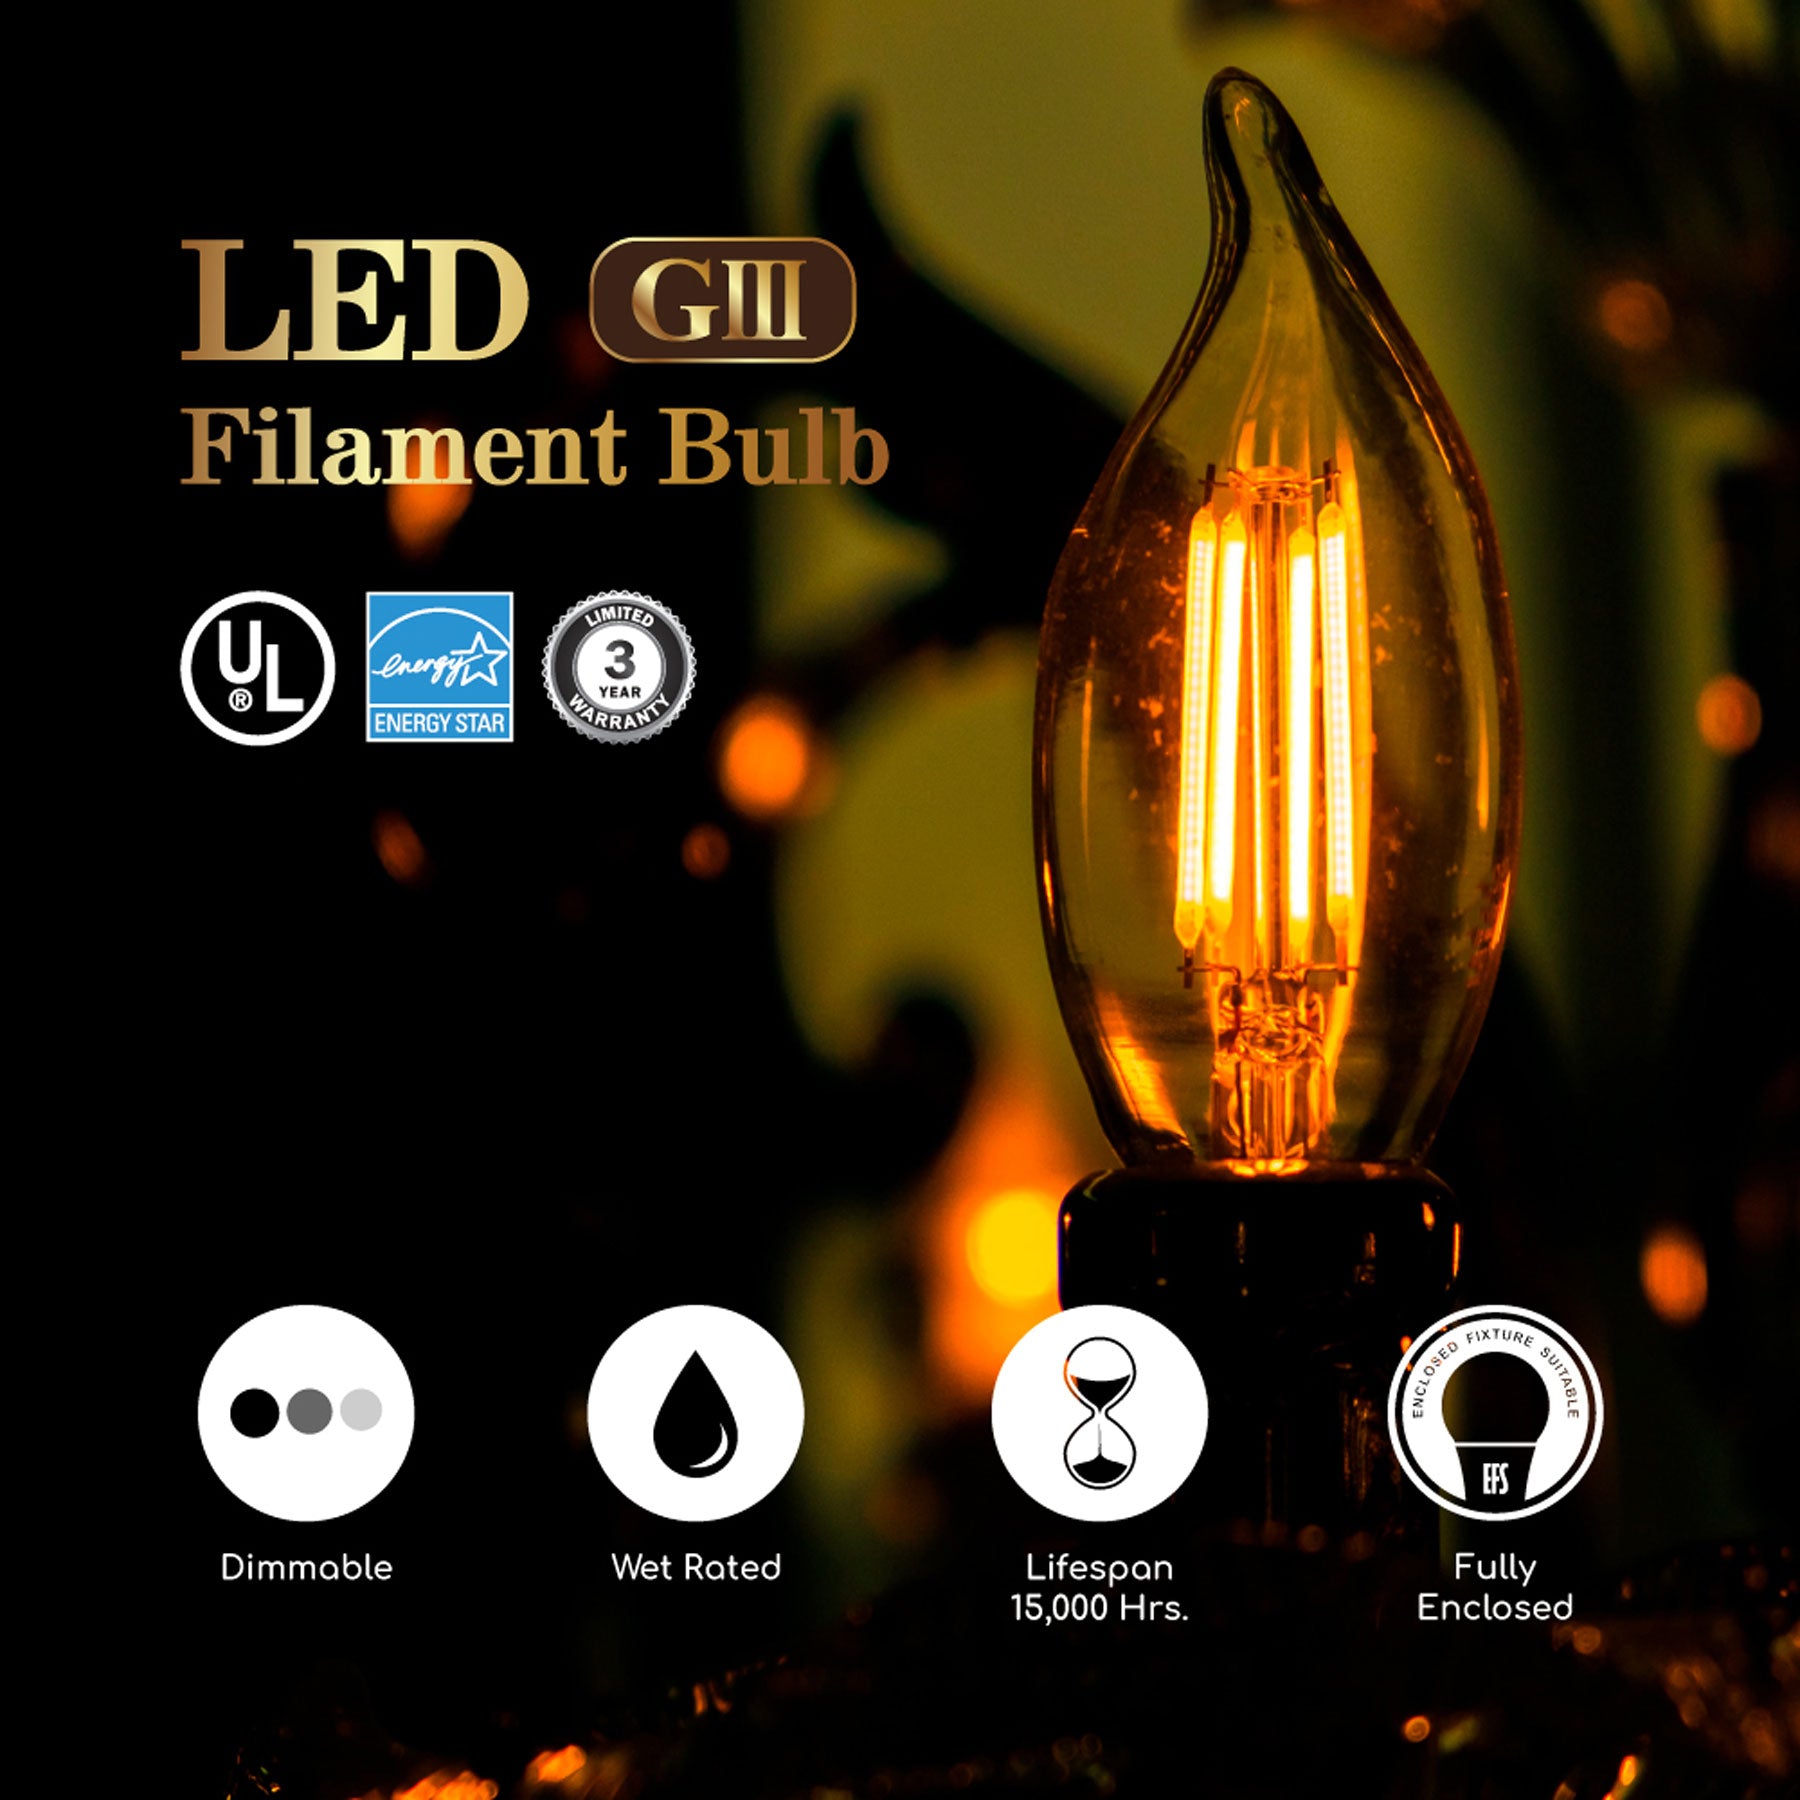 60-Watt Equivalent B10 E12 Bent Tip Antique Retro Filament Light Bulb